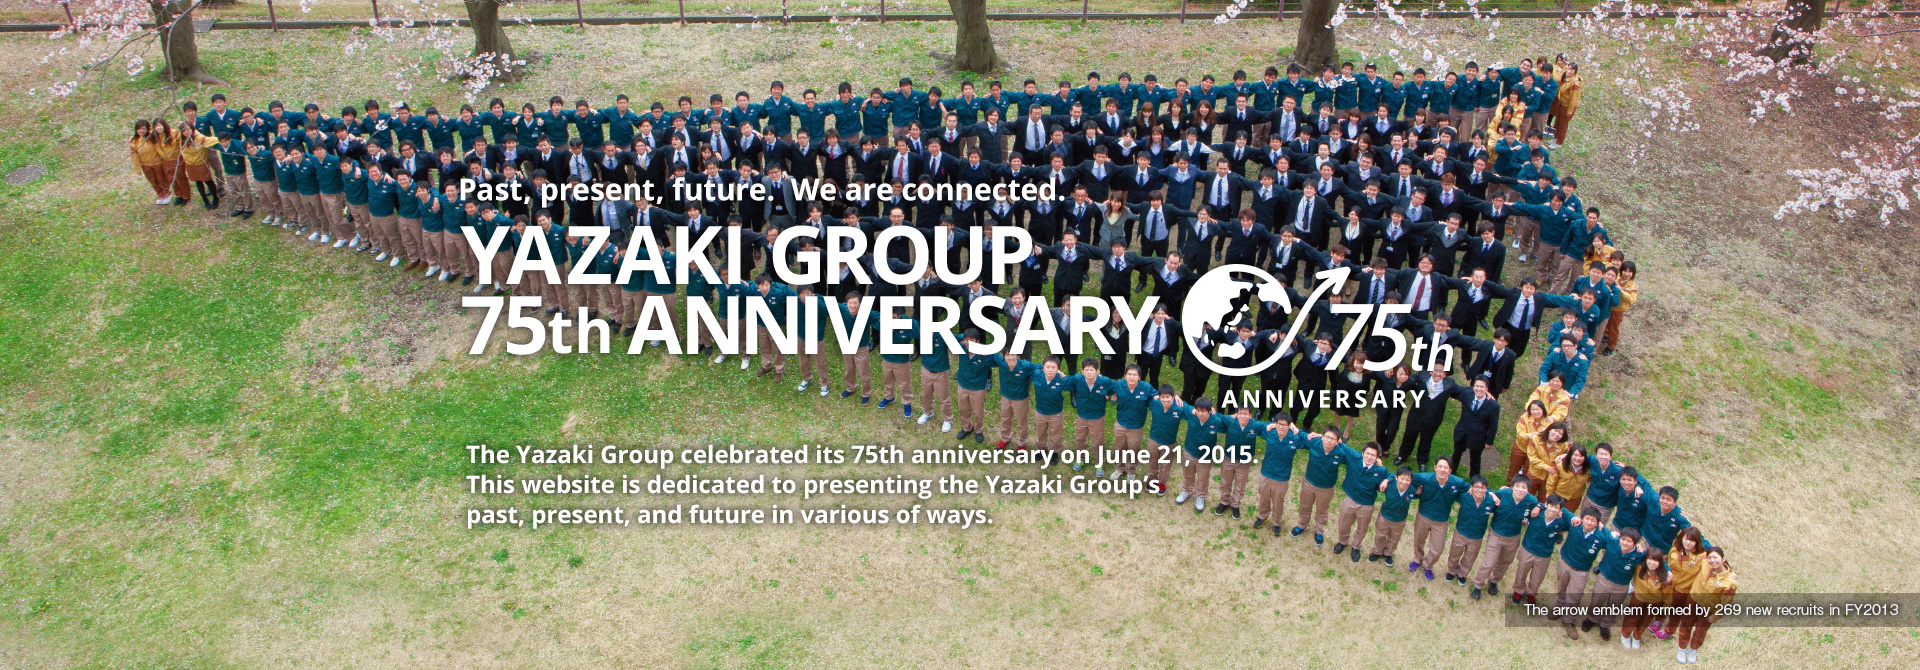 YAZAKI GROUP 75th ANNIVERSARY